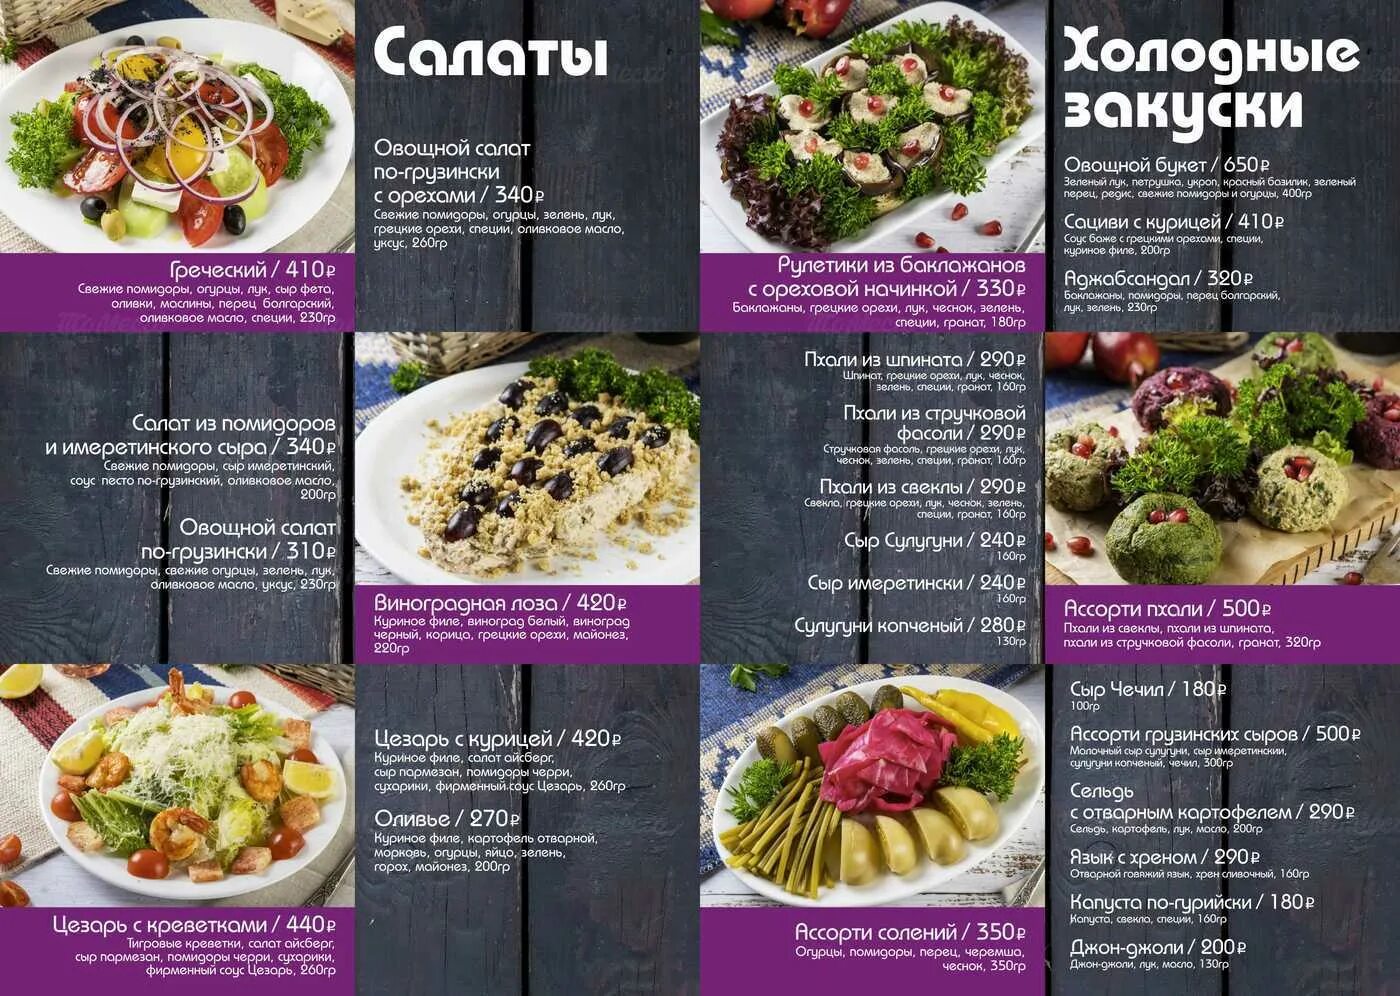 Атмосфера вкуса меню. Меню кавказской кухни для кафе. Меню кавказской кухни. Меню Кавказского ресторана. Меню грузинской кухни в ресторане.